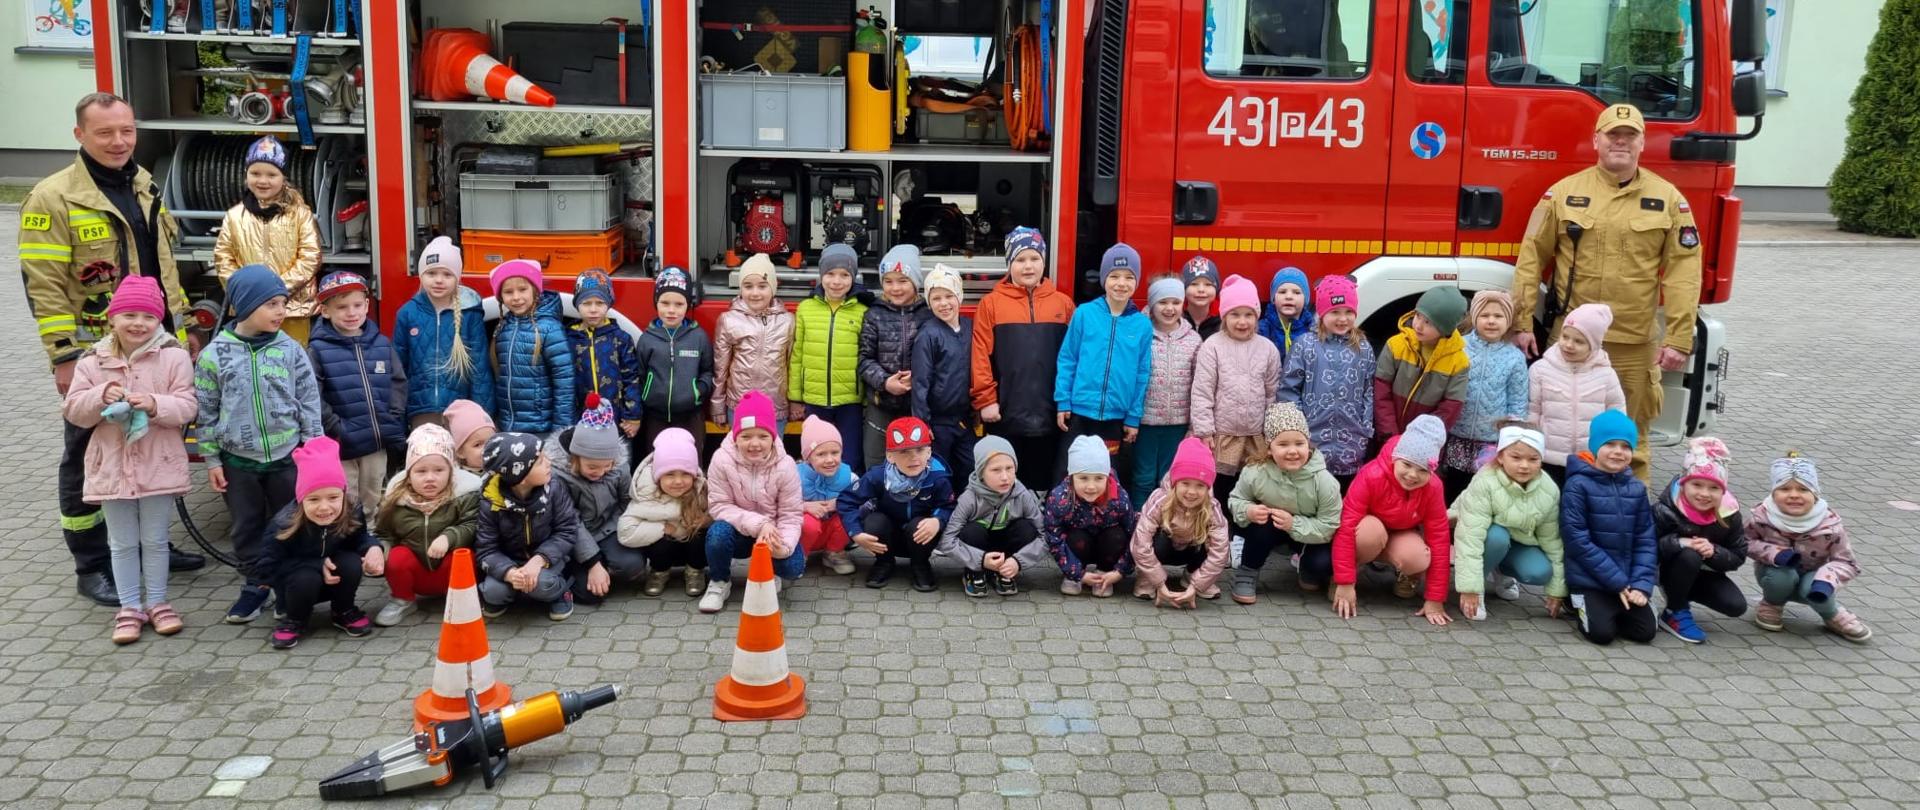 Zdjęcie przedstawia dwóch strażaków oraz grupę dzieci, którzy pozują do zdjęcia na tle wozu strażackiego. Skrytki samochodu są otwarte, przed grupą dzieci leży rozpieracz hydrauliczny.